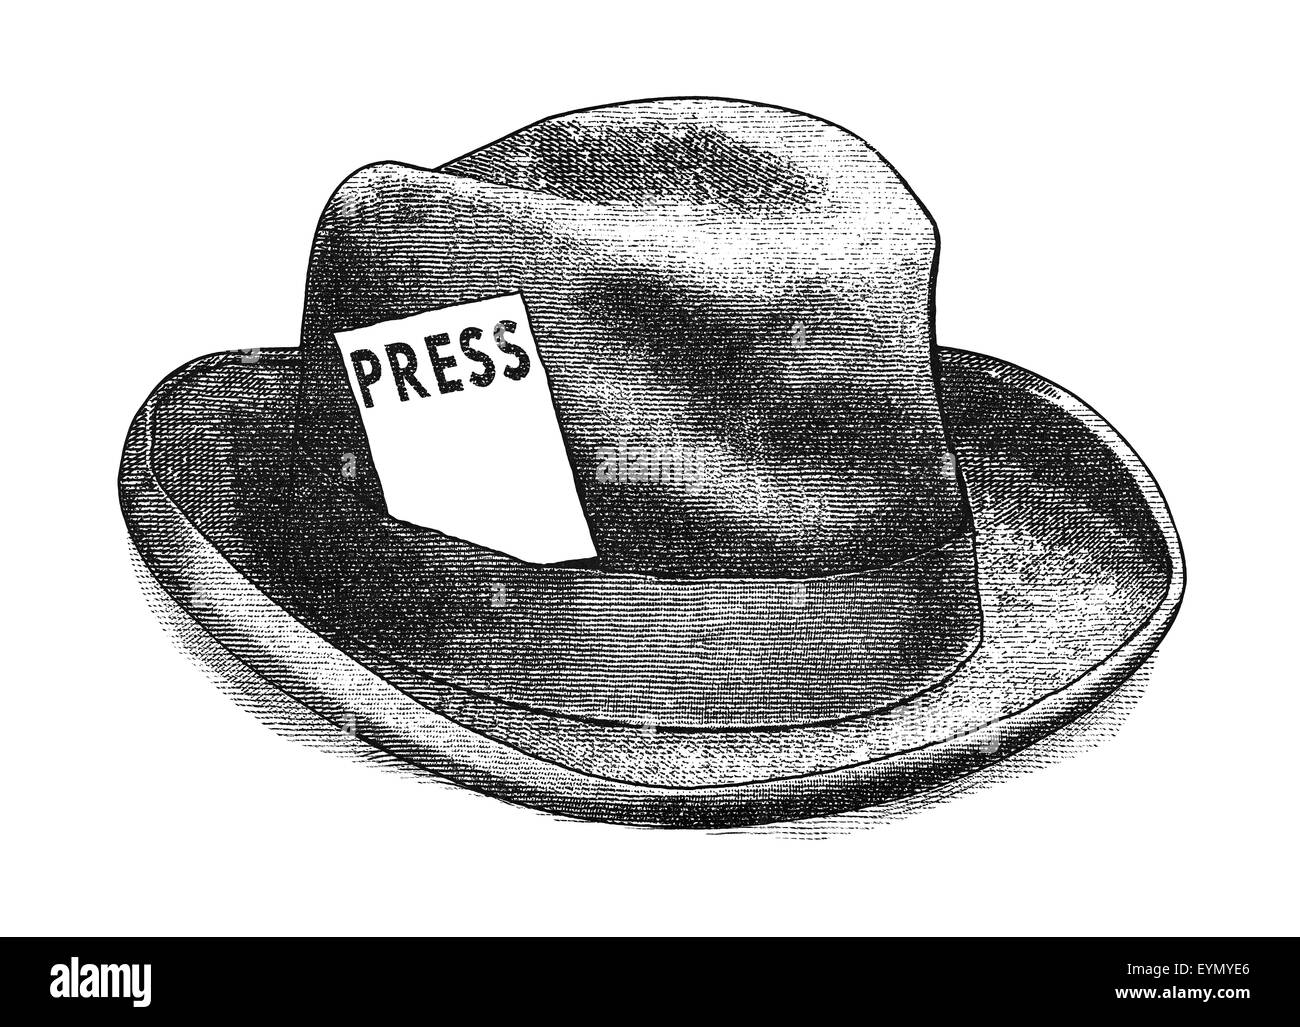 Ilustración digital original de un sombrero Fedora con pase de prensa, en el estilo de grabados antiguos. Foto de stock